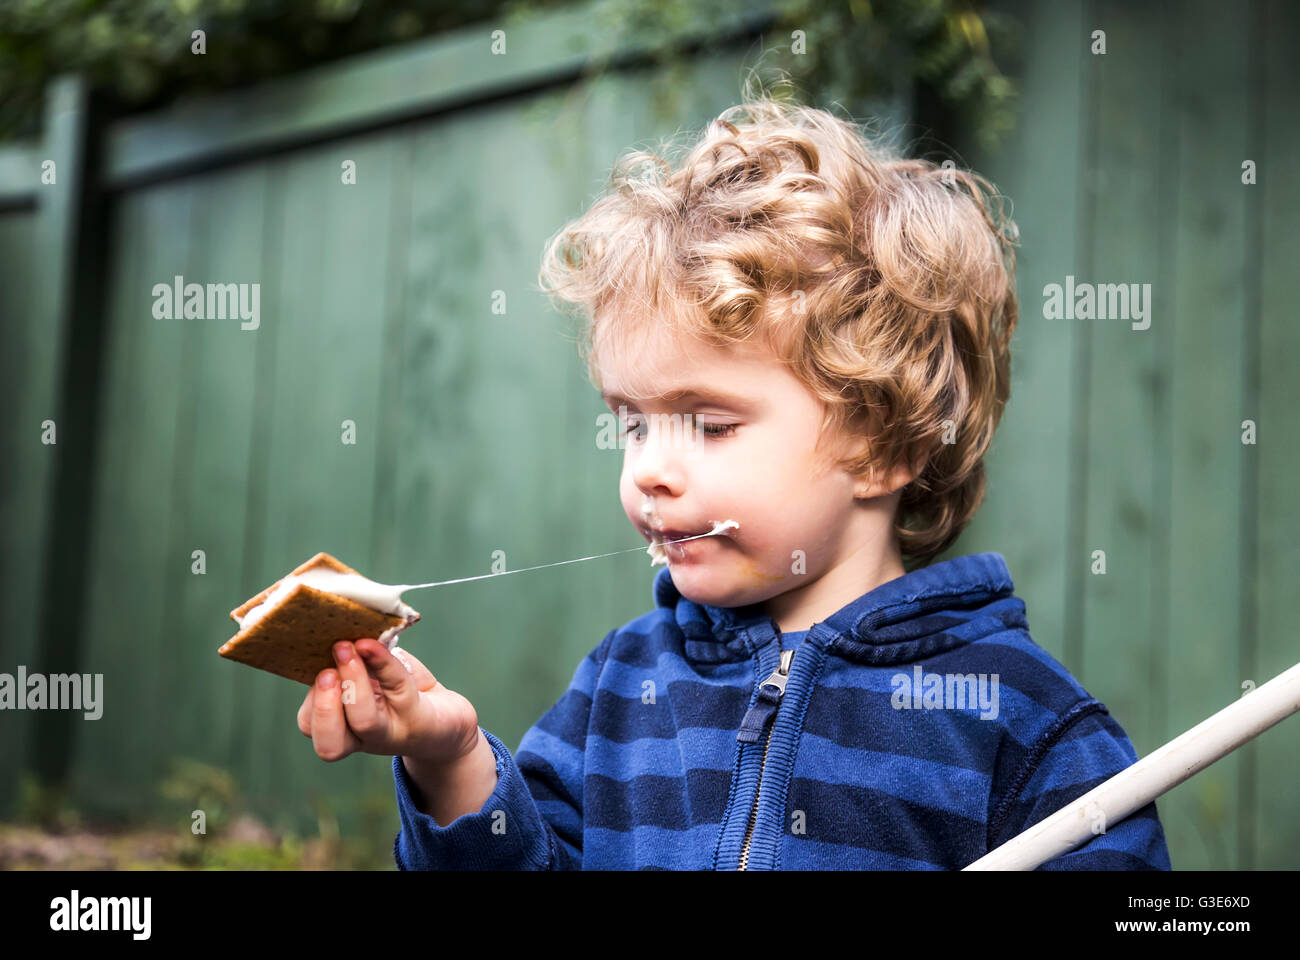 Jeune garçon mangeant une s'more à l'extérieur et se collant ; St. Albert, Alberta, Canada Banque D'Images